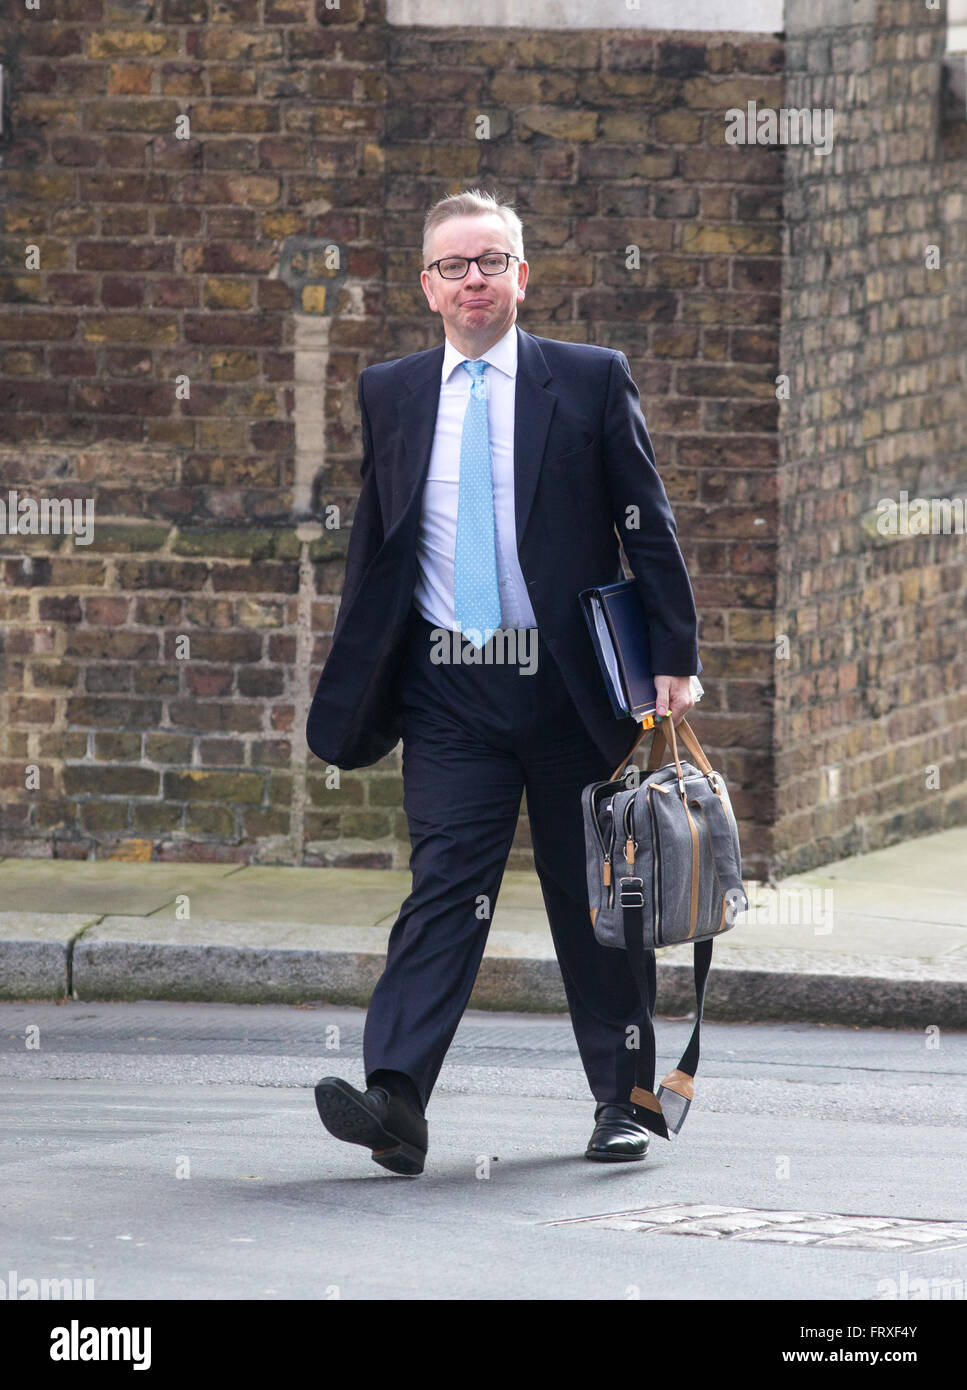 Michael Gove, secrétaire d'Etat à la justice,arrive au numéro 10 Downing Street.Il est en campagne électorale pour quitter l'UE Banque D'Images